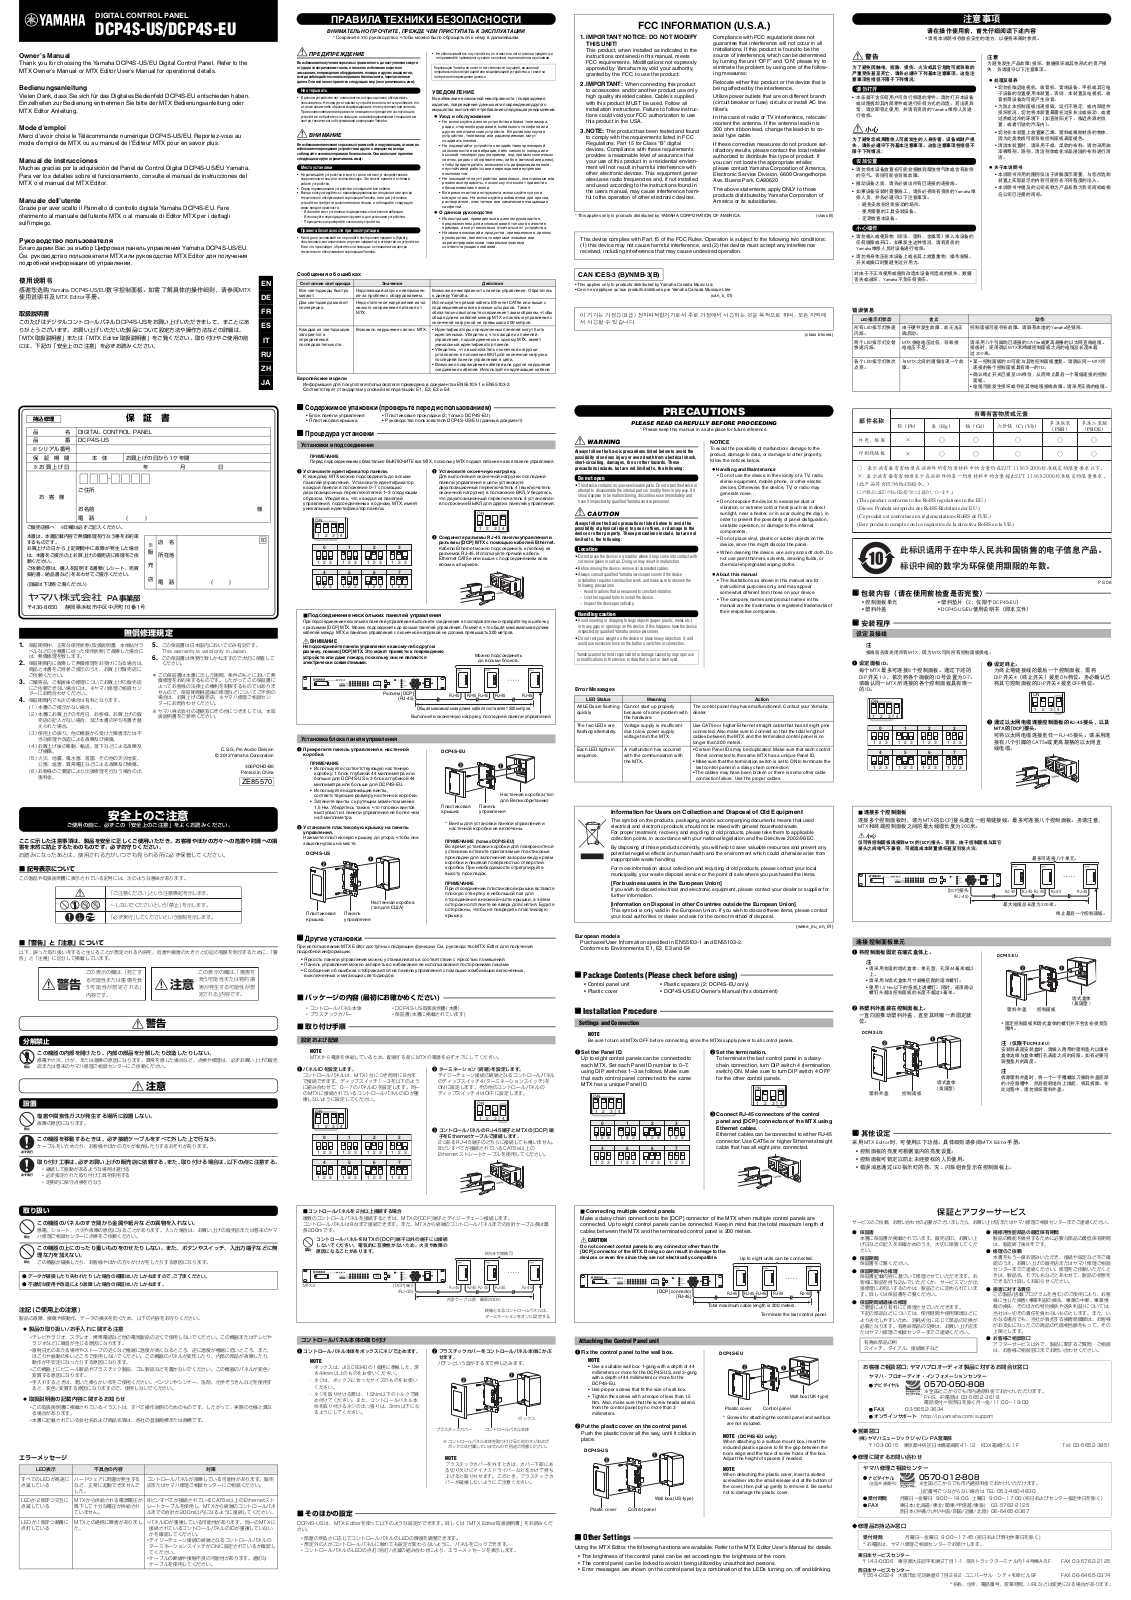 Yamaha DCP4S-US, DCP4S-EU Manual